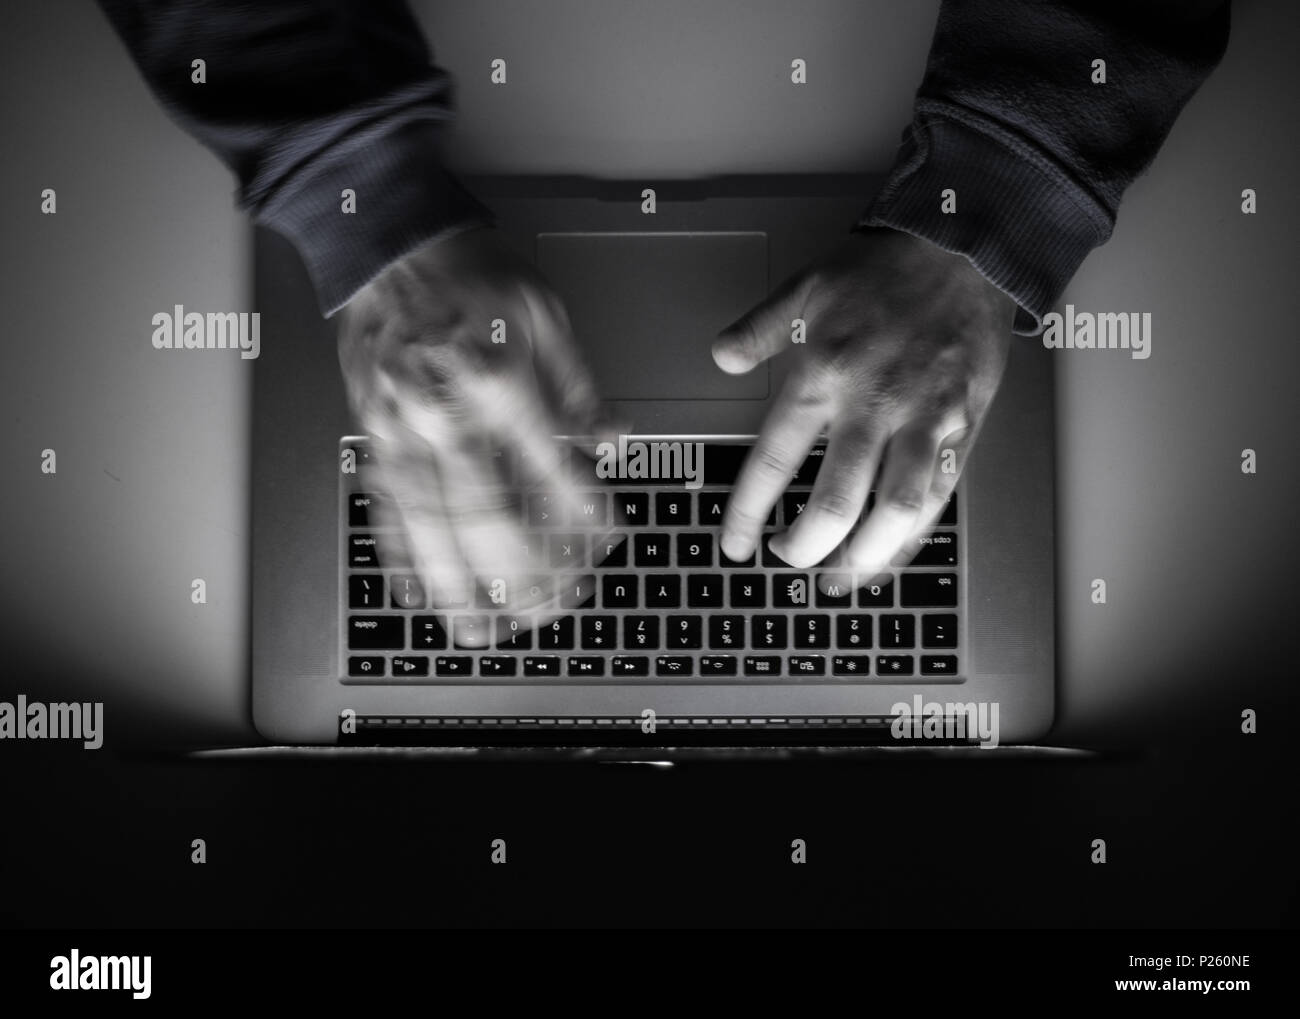 Cyberkriminalität, einem Laptop Hacker, schreibt Codes unerlaubte Sachen zu Zugang, einen illegalen Weg, Hacker, Kriminalität, cyber Stockfoto